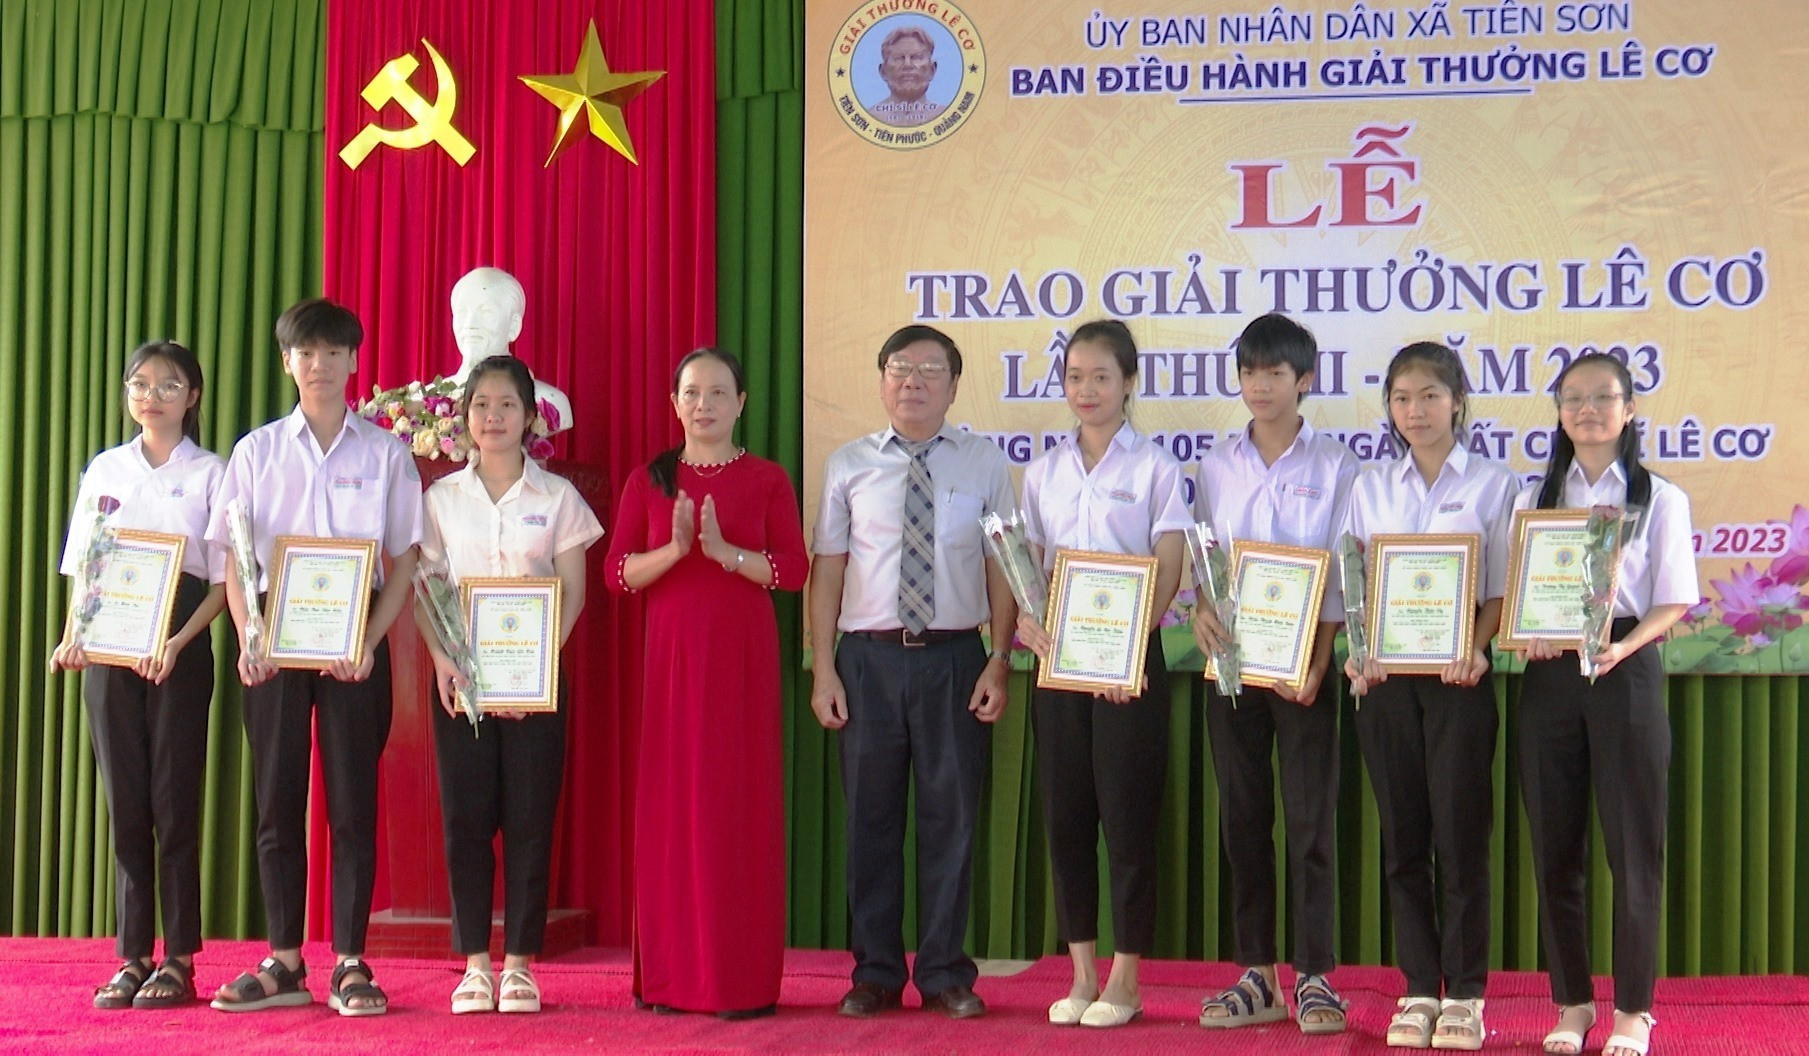 Trao thưởng Quỹ học bổng Lê Cơ cho học sinh, sinh vên xuất sắc Tiên Sơn. Ảnh:N.HƯNG